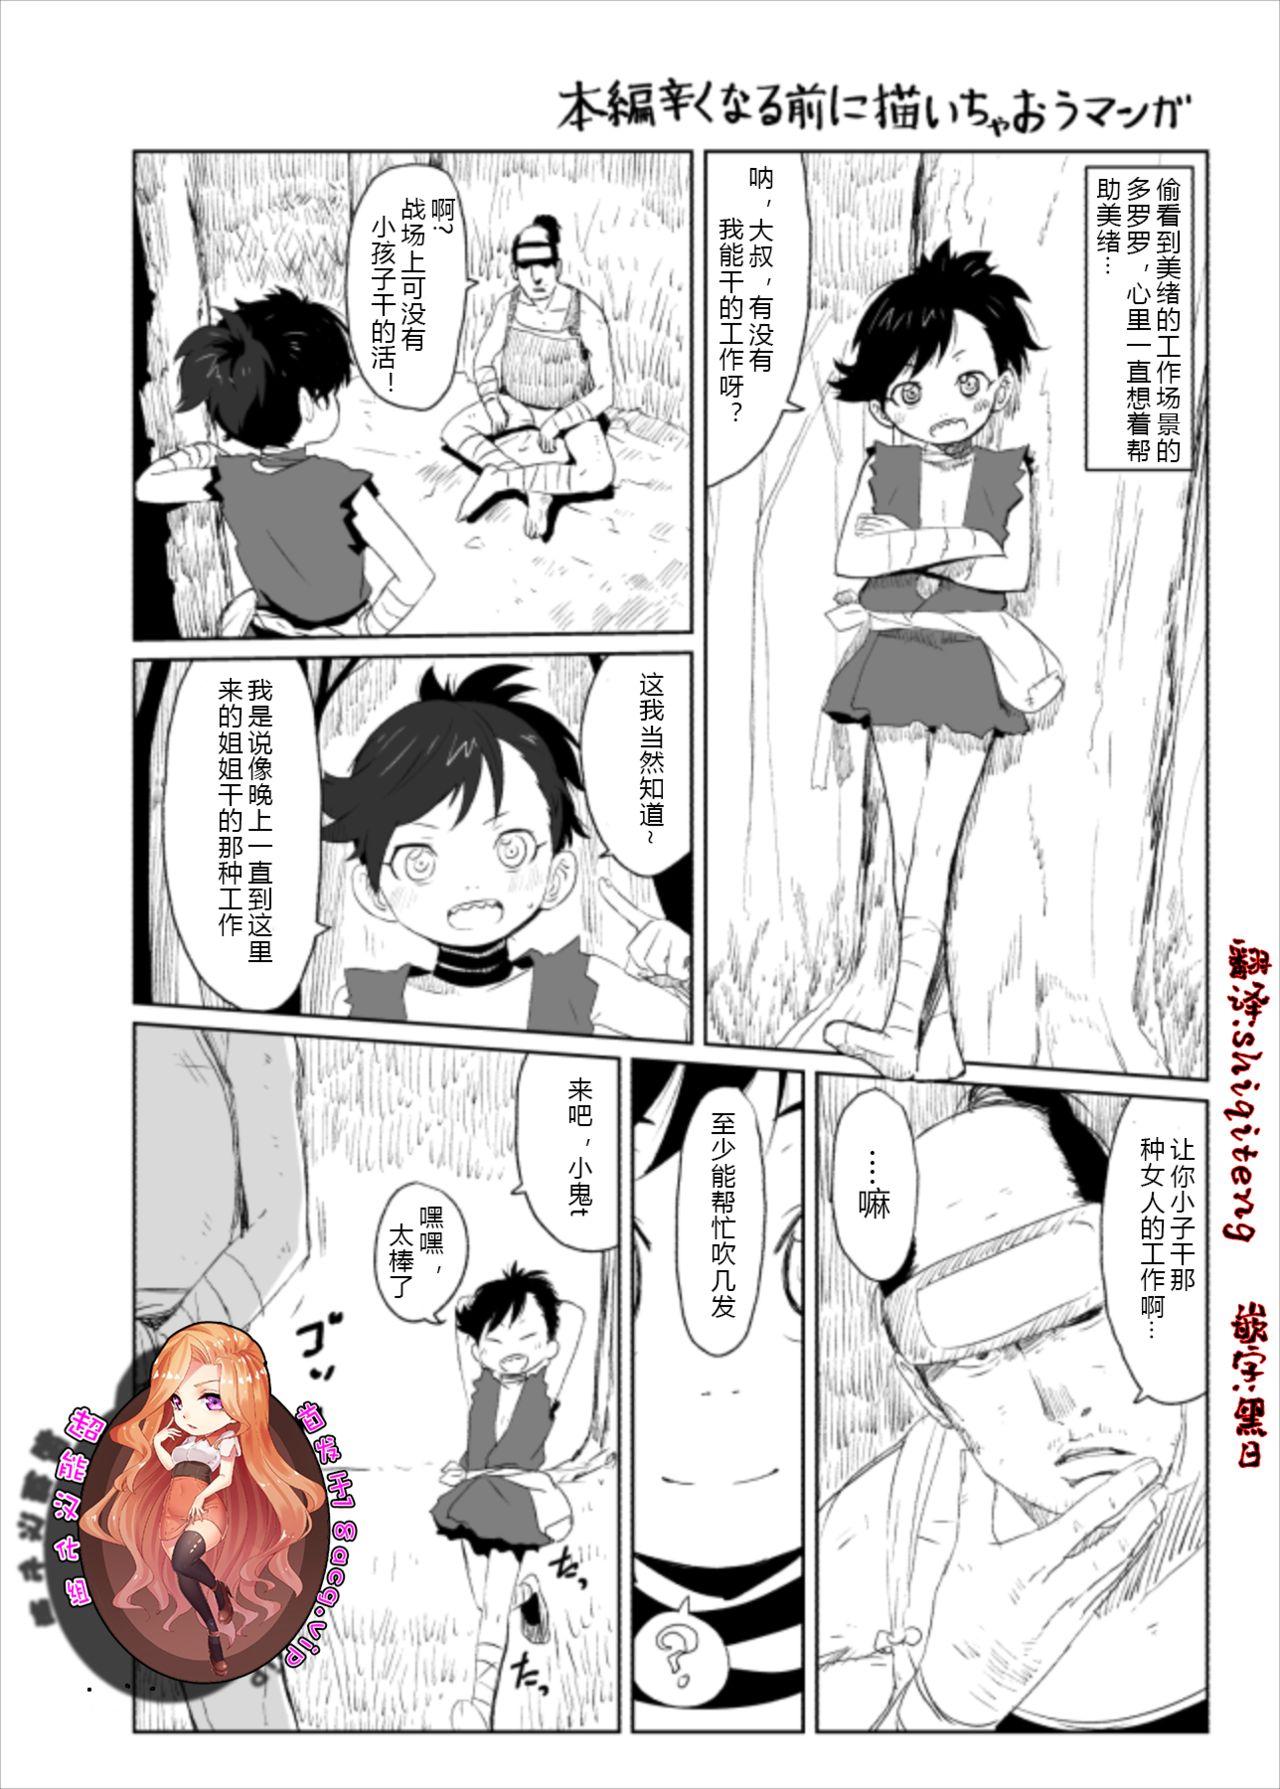 Dororo Rakugaki Echi Manga 1